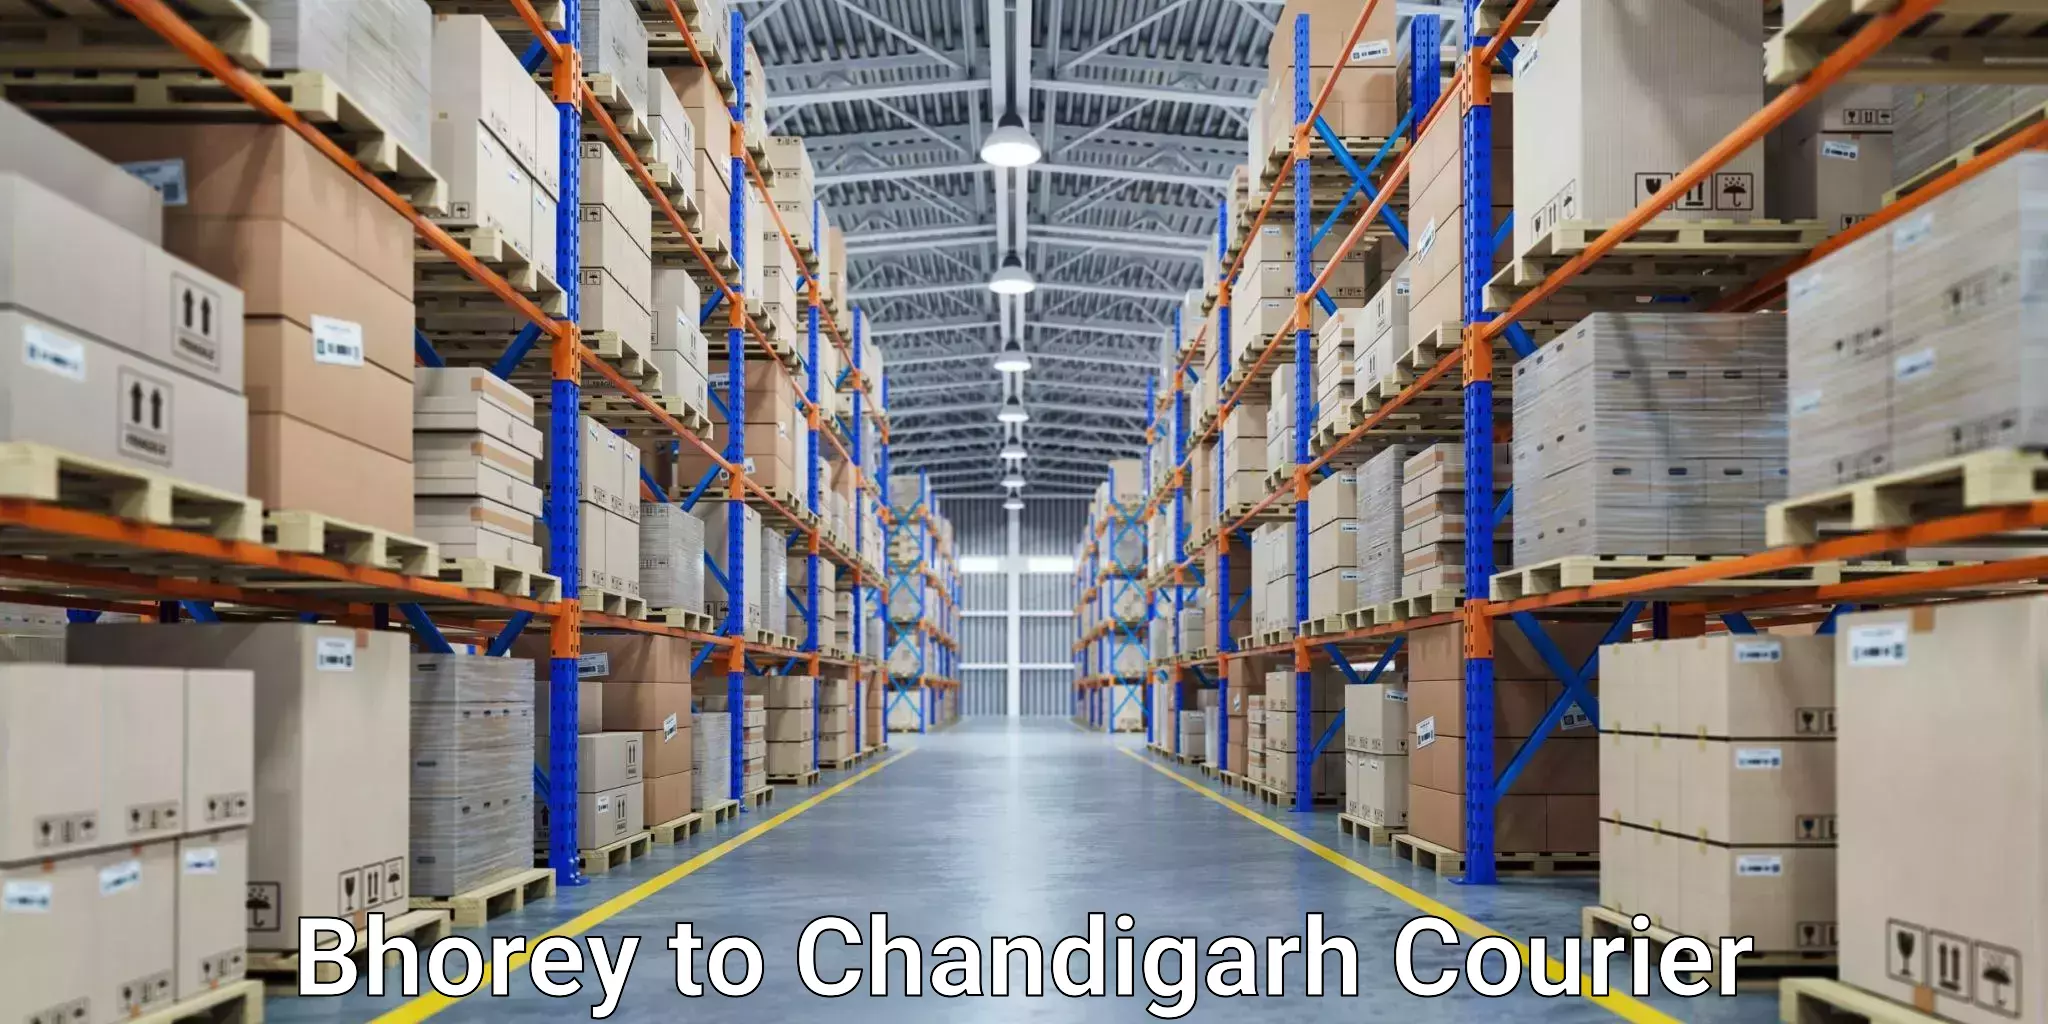 Courier service comparison Bhorey to Chandigarh